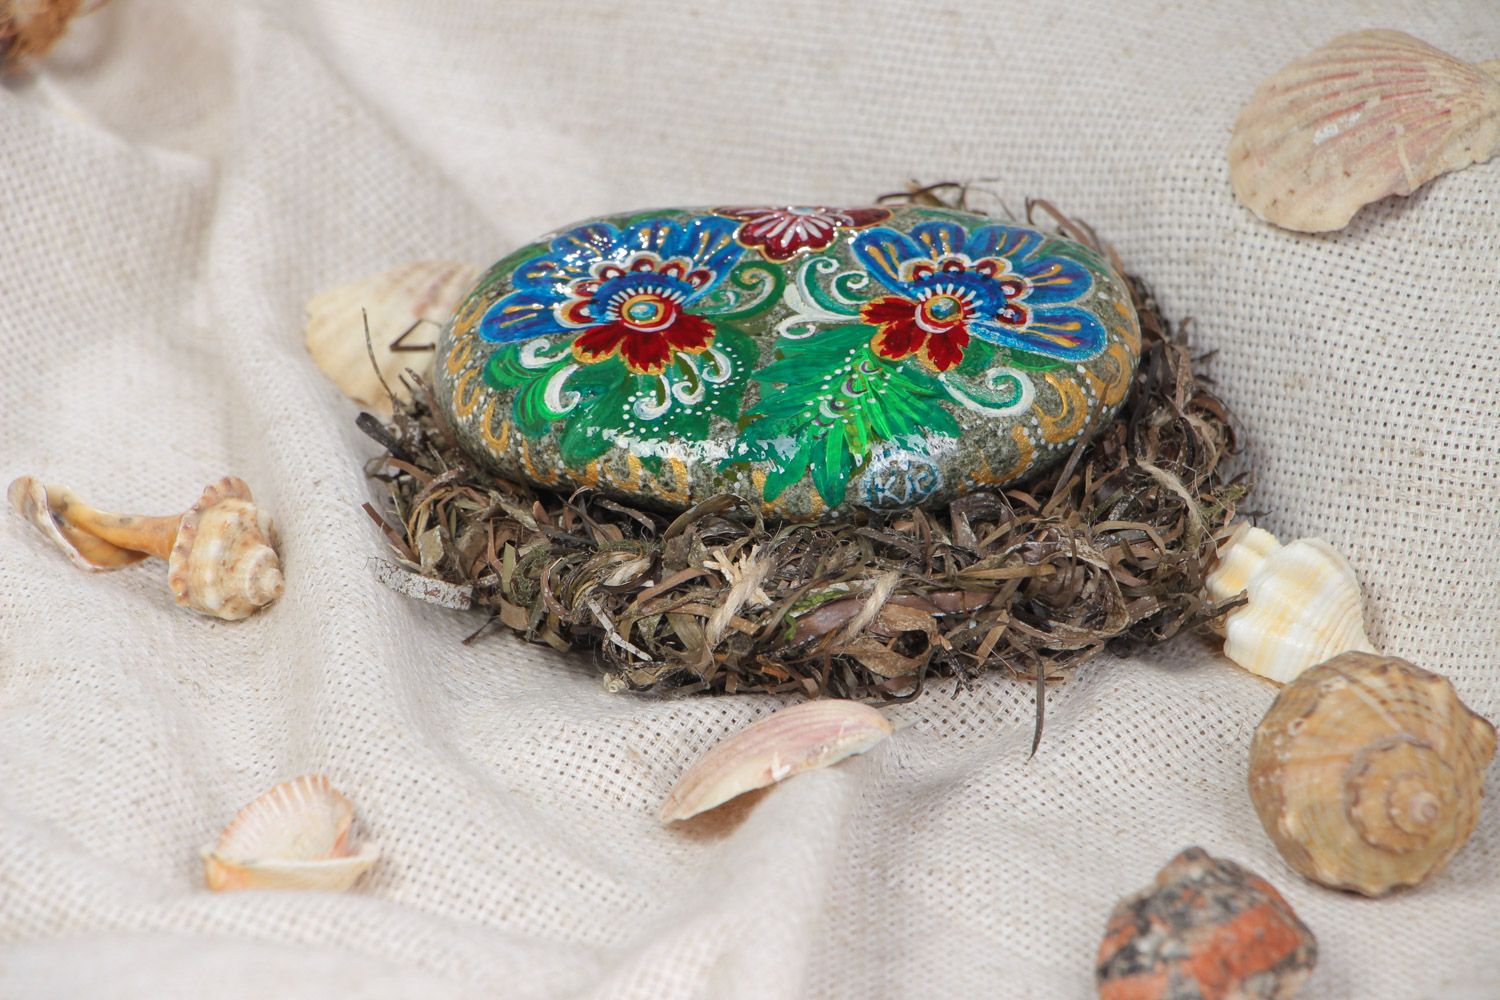 Морской камень для декора дома расписанный акриловыми красками на подставке  фото 1